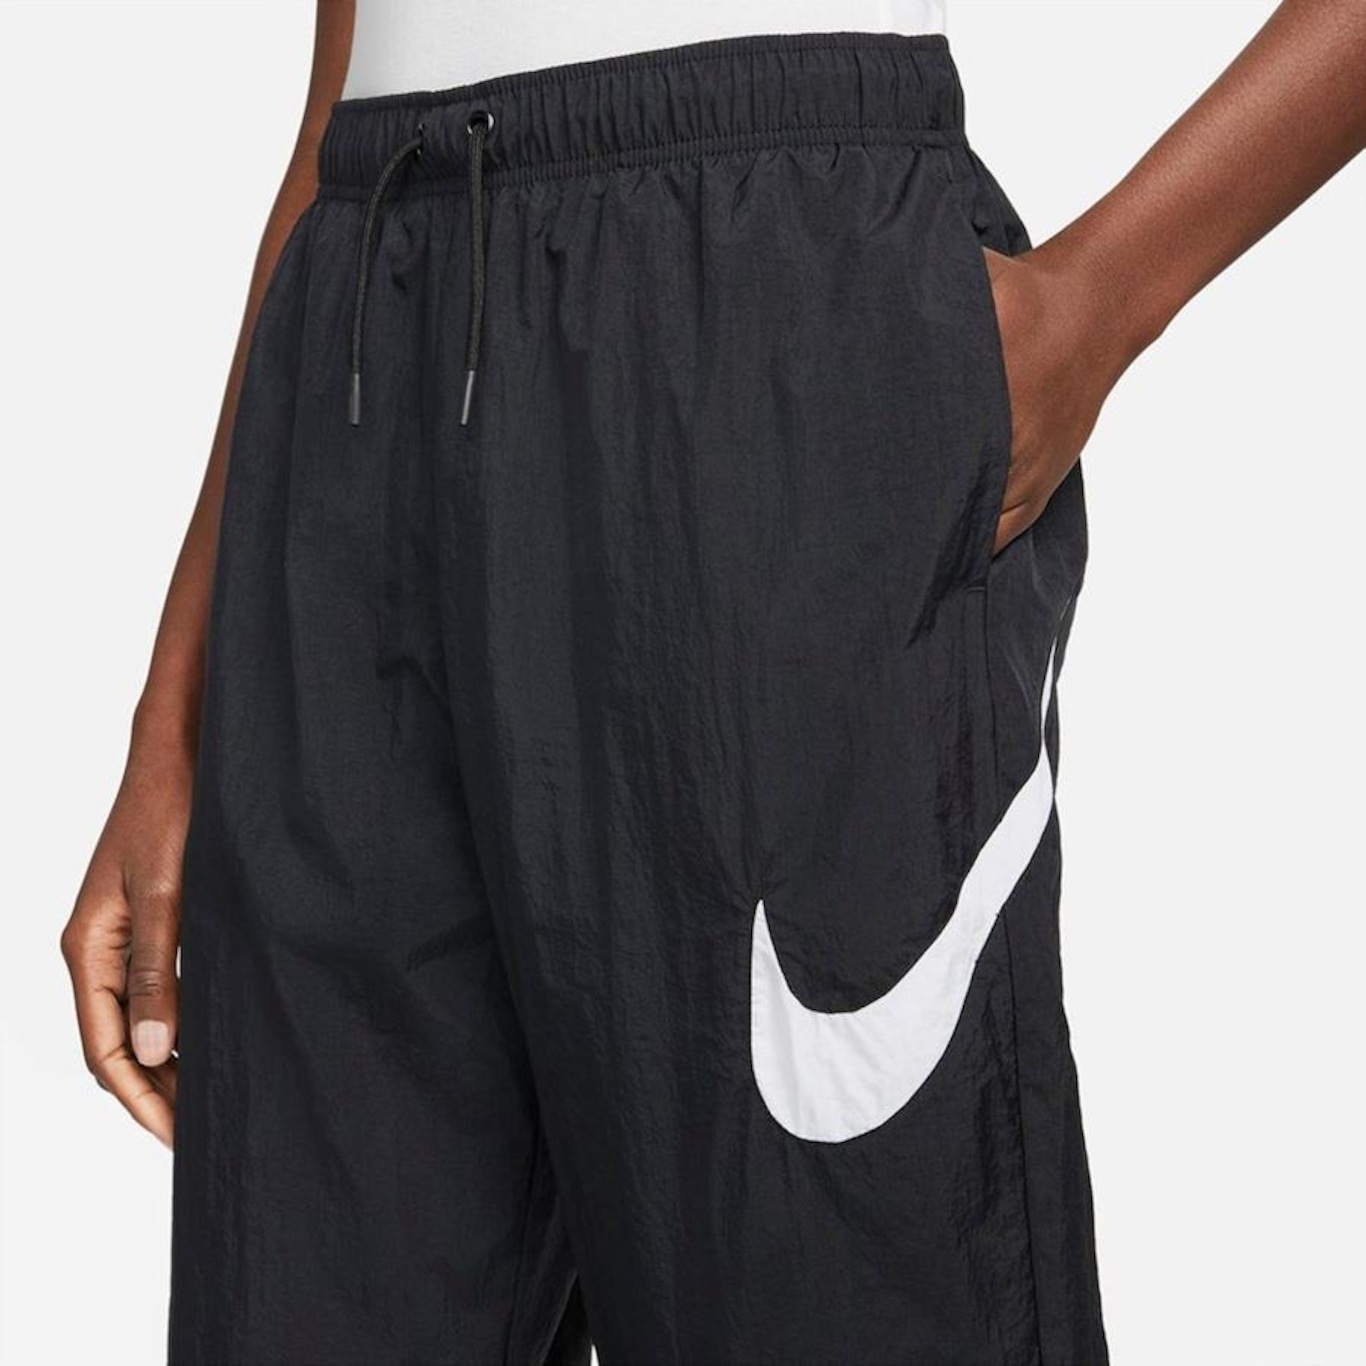 Calça Nike Sportswear Essential - Feminina em Promoção